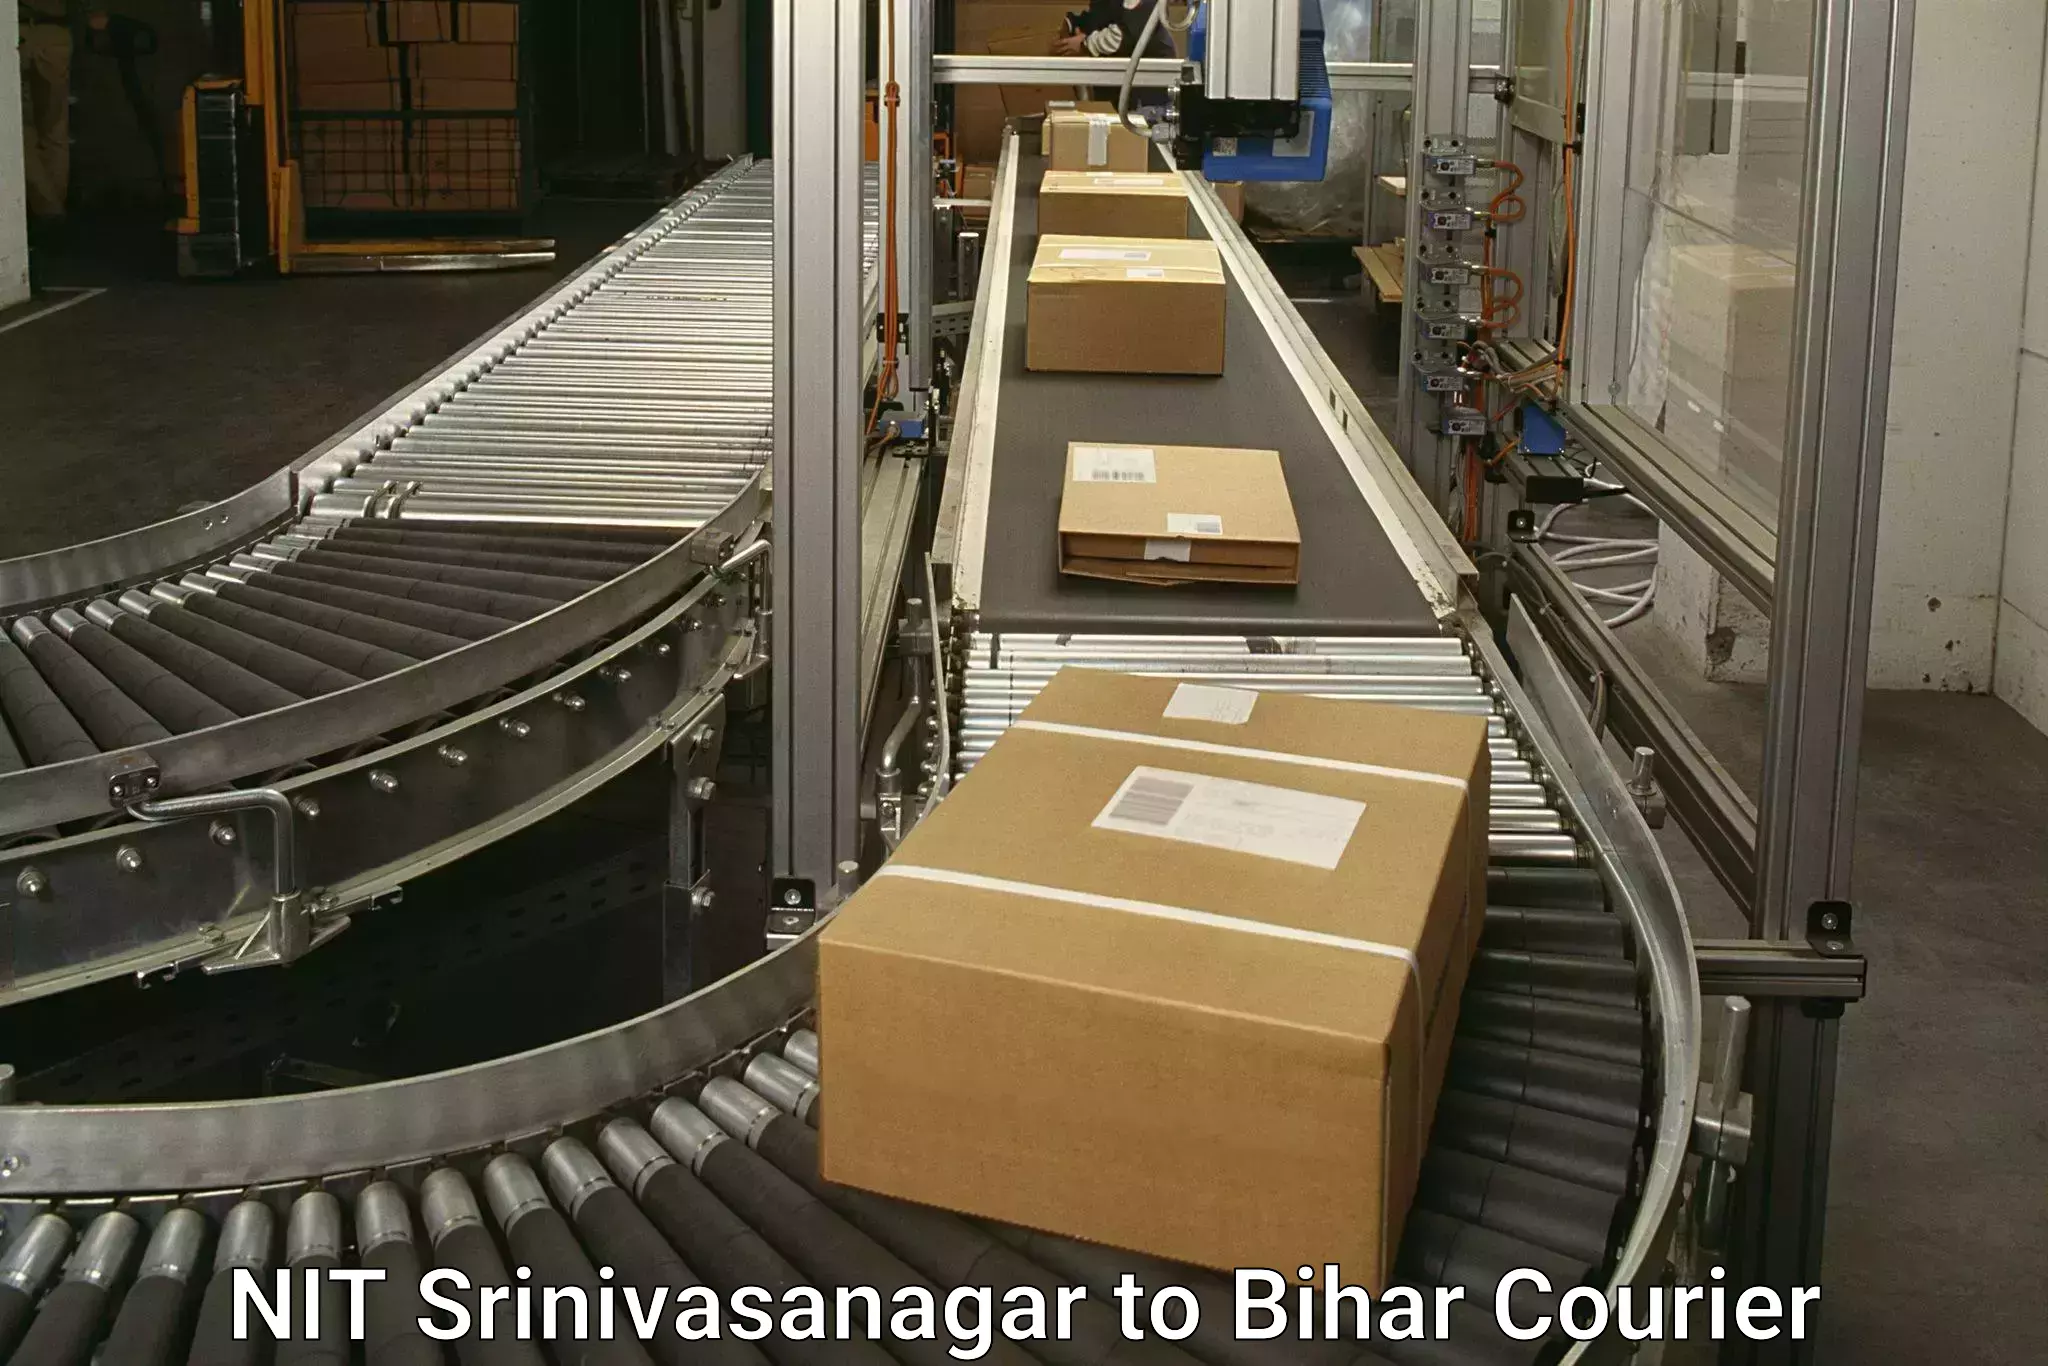 Weekend courier service NIT Srinivasanagar to Aurangabad Bihar